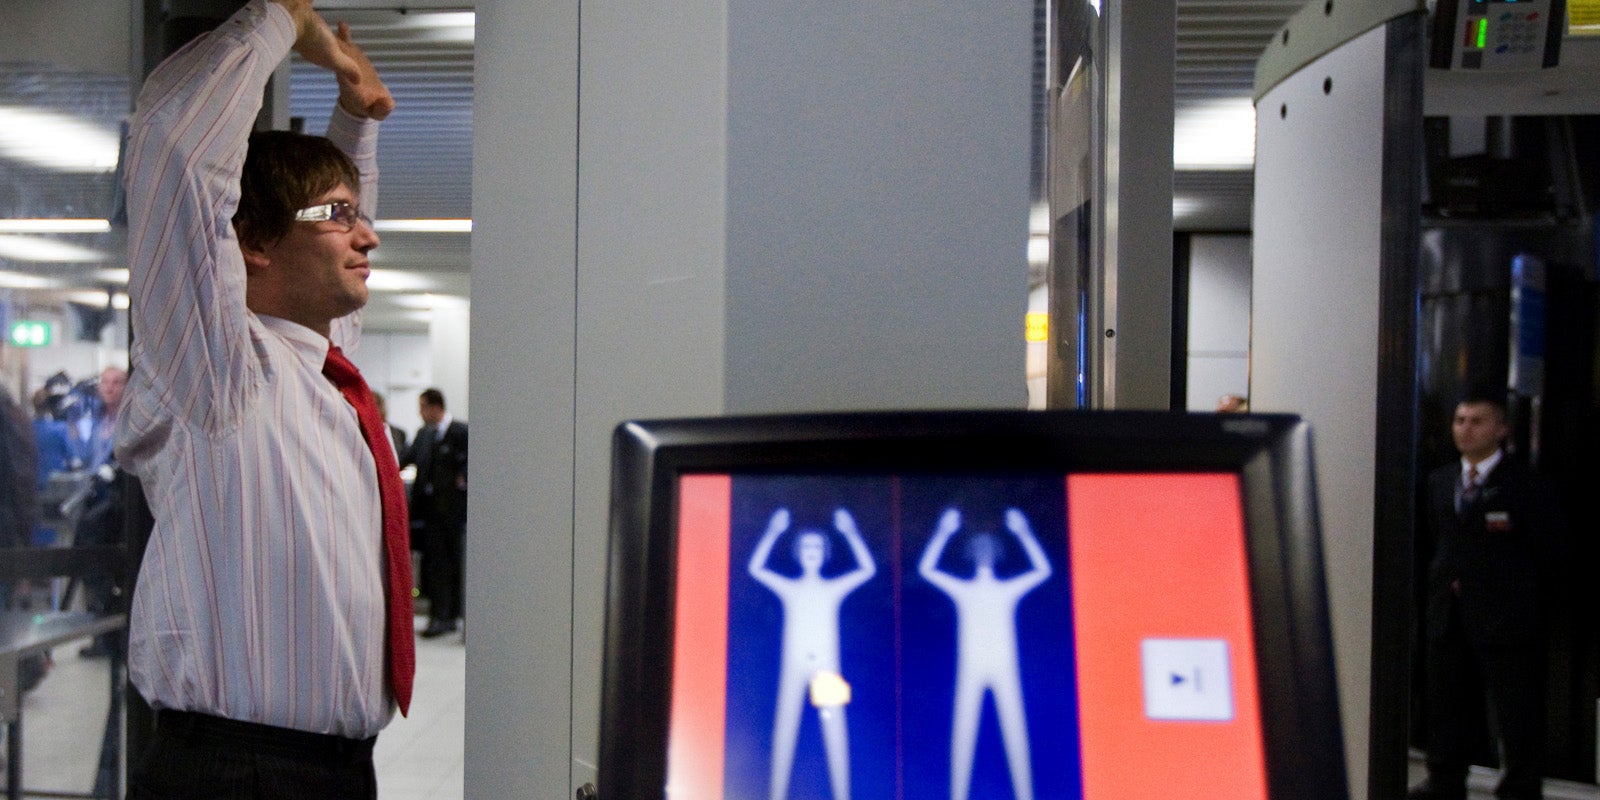 Рентгеновский досмотр. Микроволновый сканер в аэропорту. Рамка сканер в аэропорту. Сканер для досмотра человека. Микроволновый сканер для досмотра.